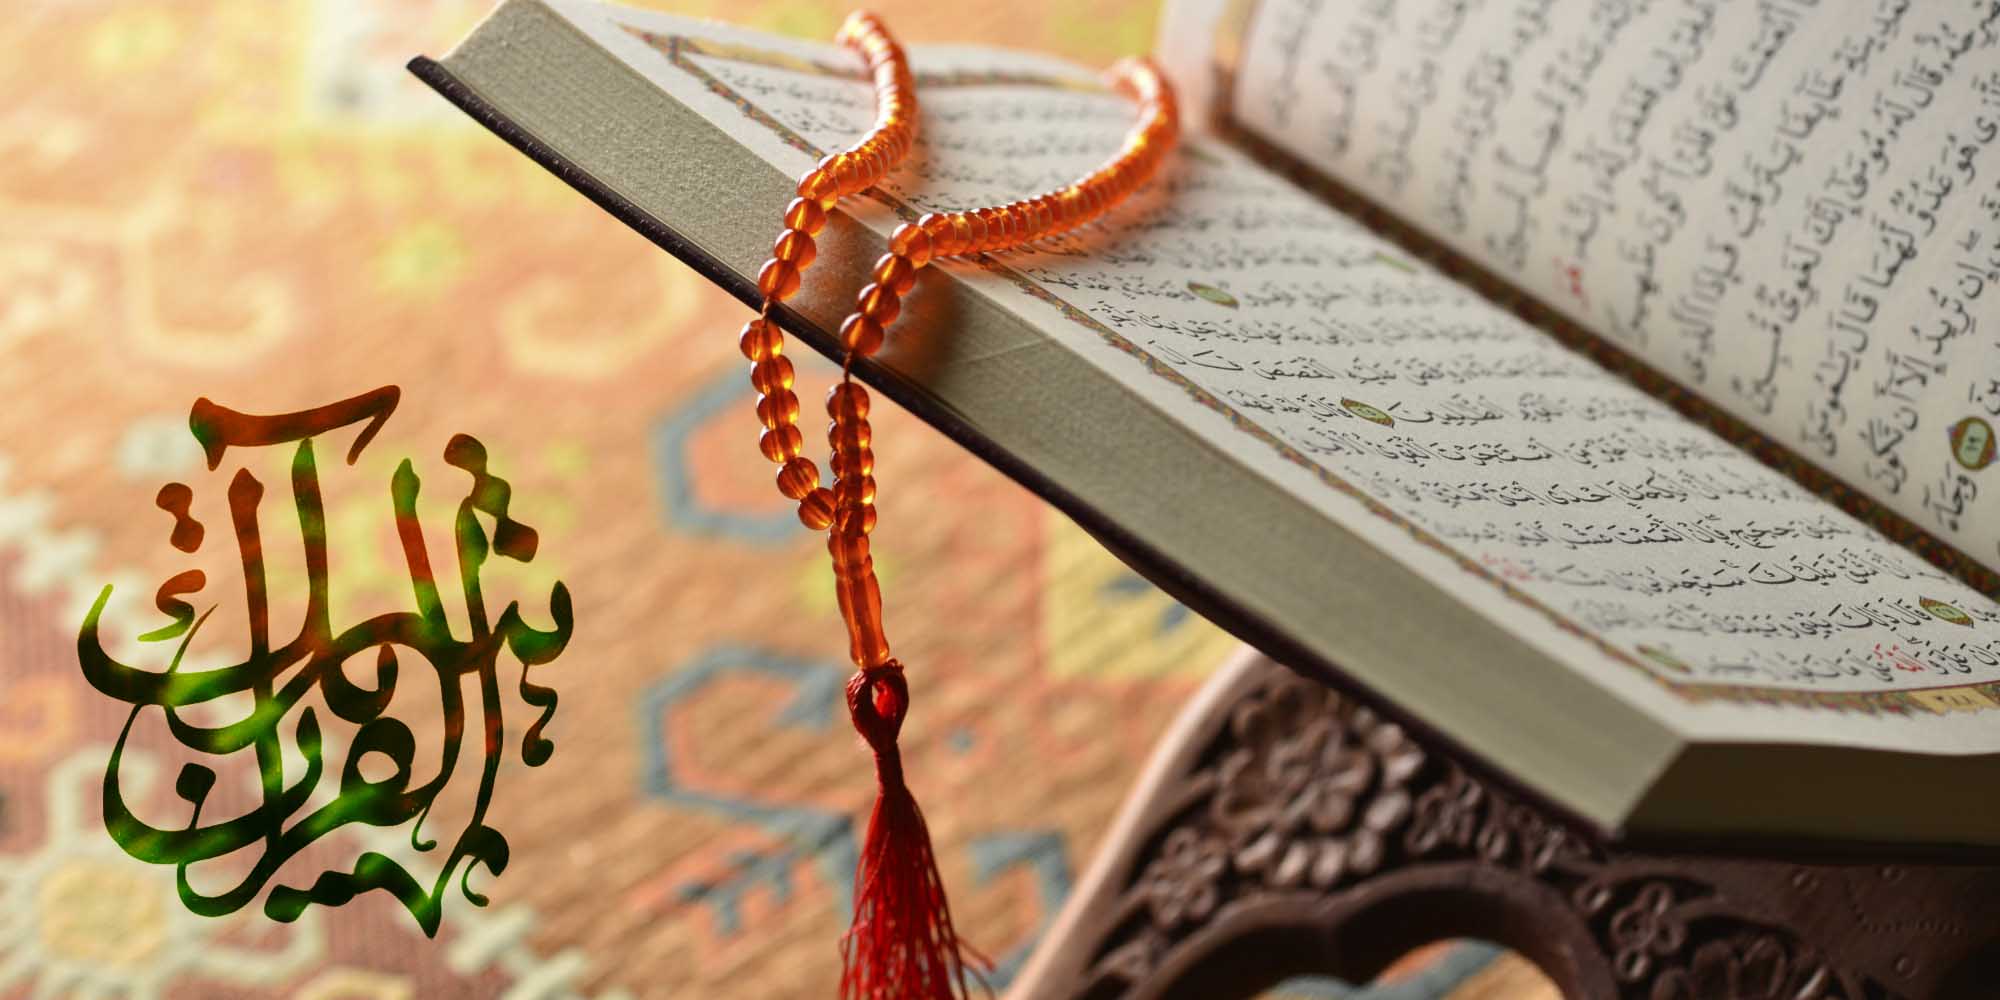 سوالات استخدامی دبیر دینی و قرآن آموزش و پرورش